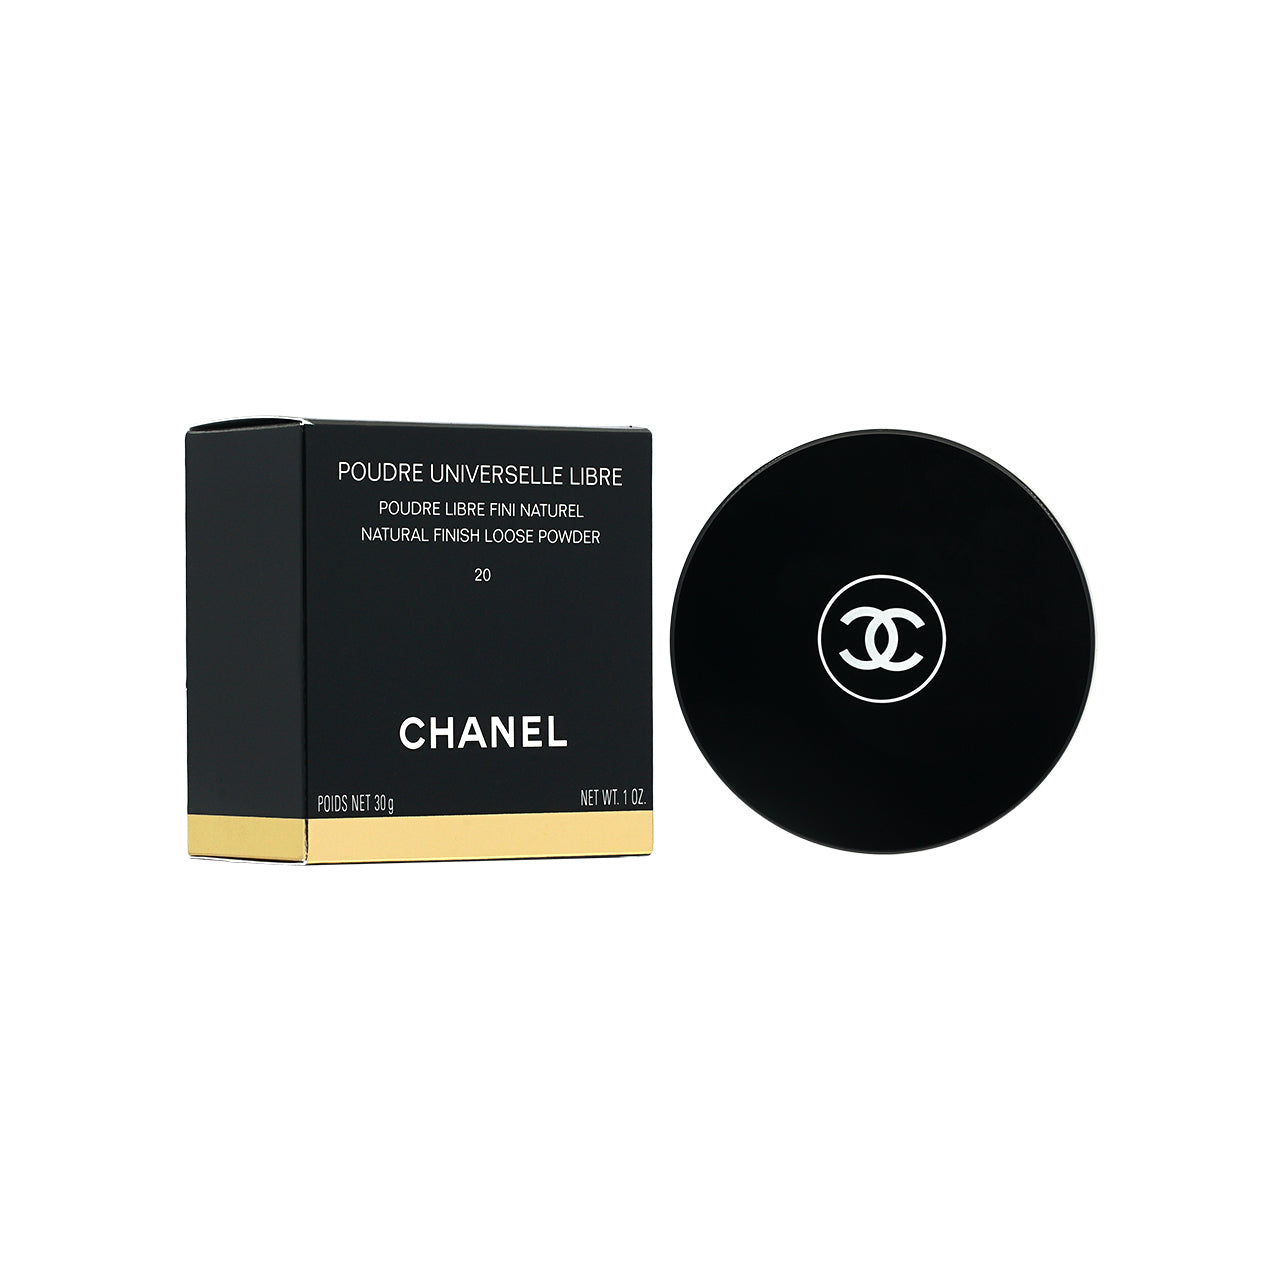 Chanel Poudre Universelle Libre #20 30g